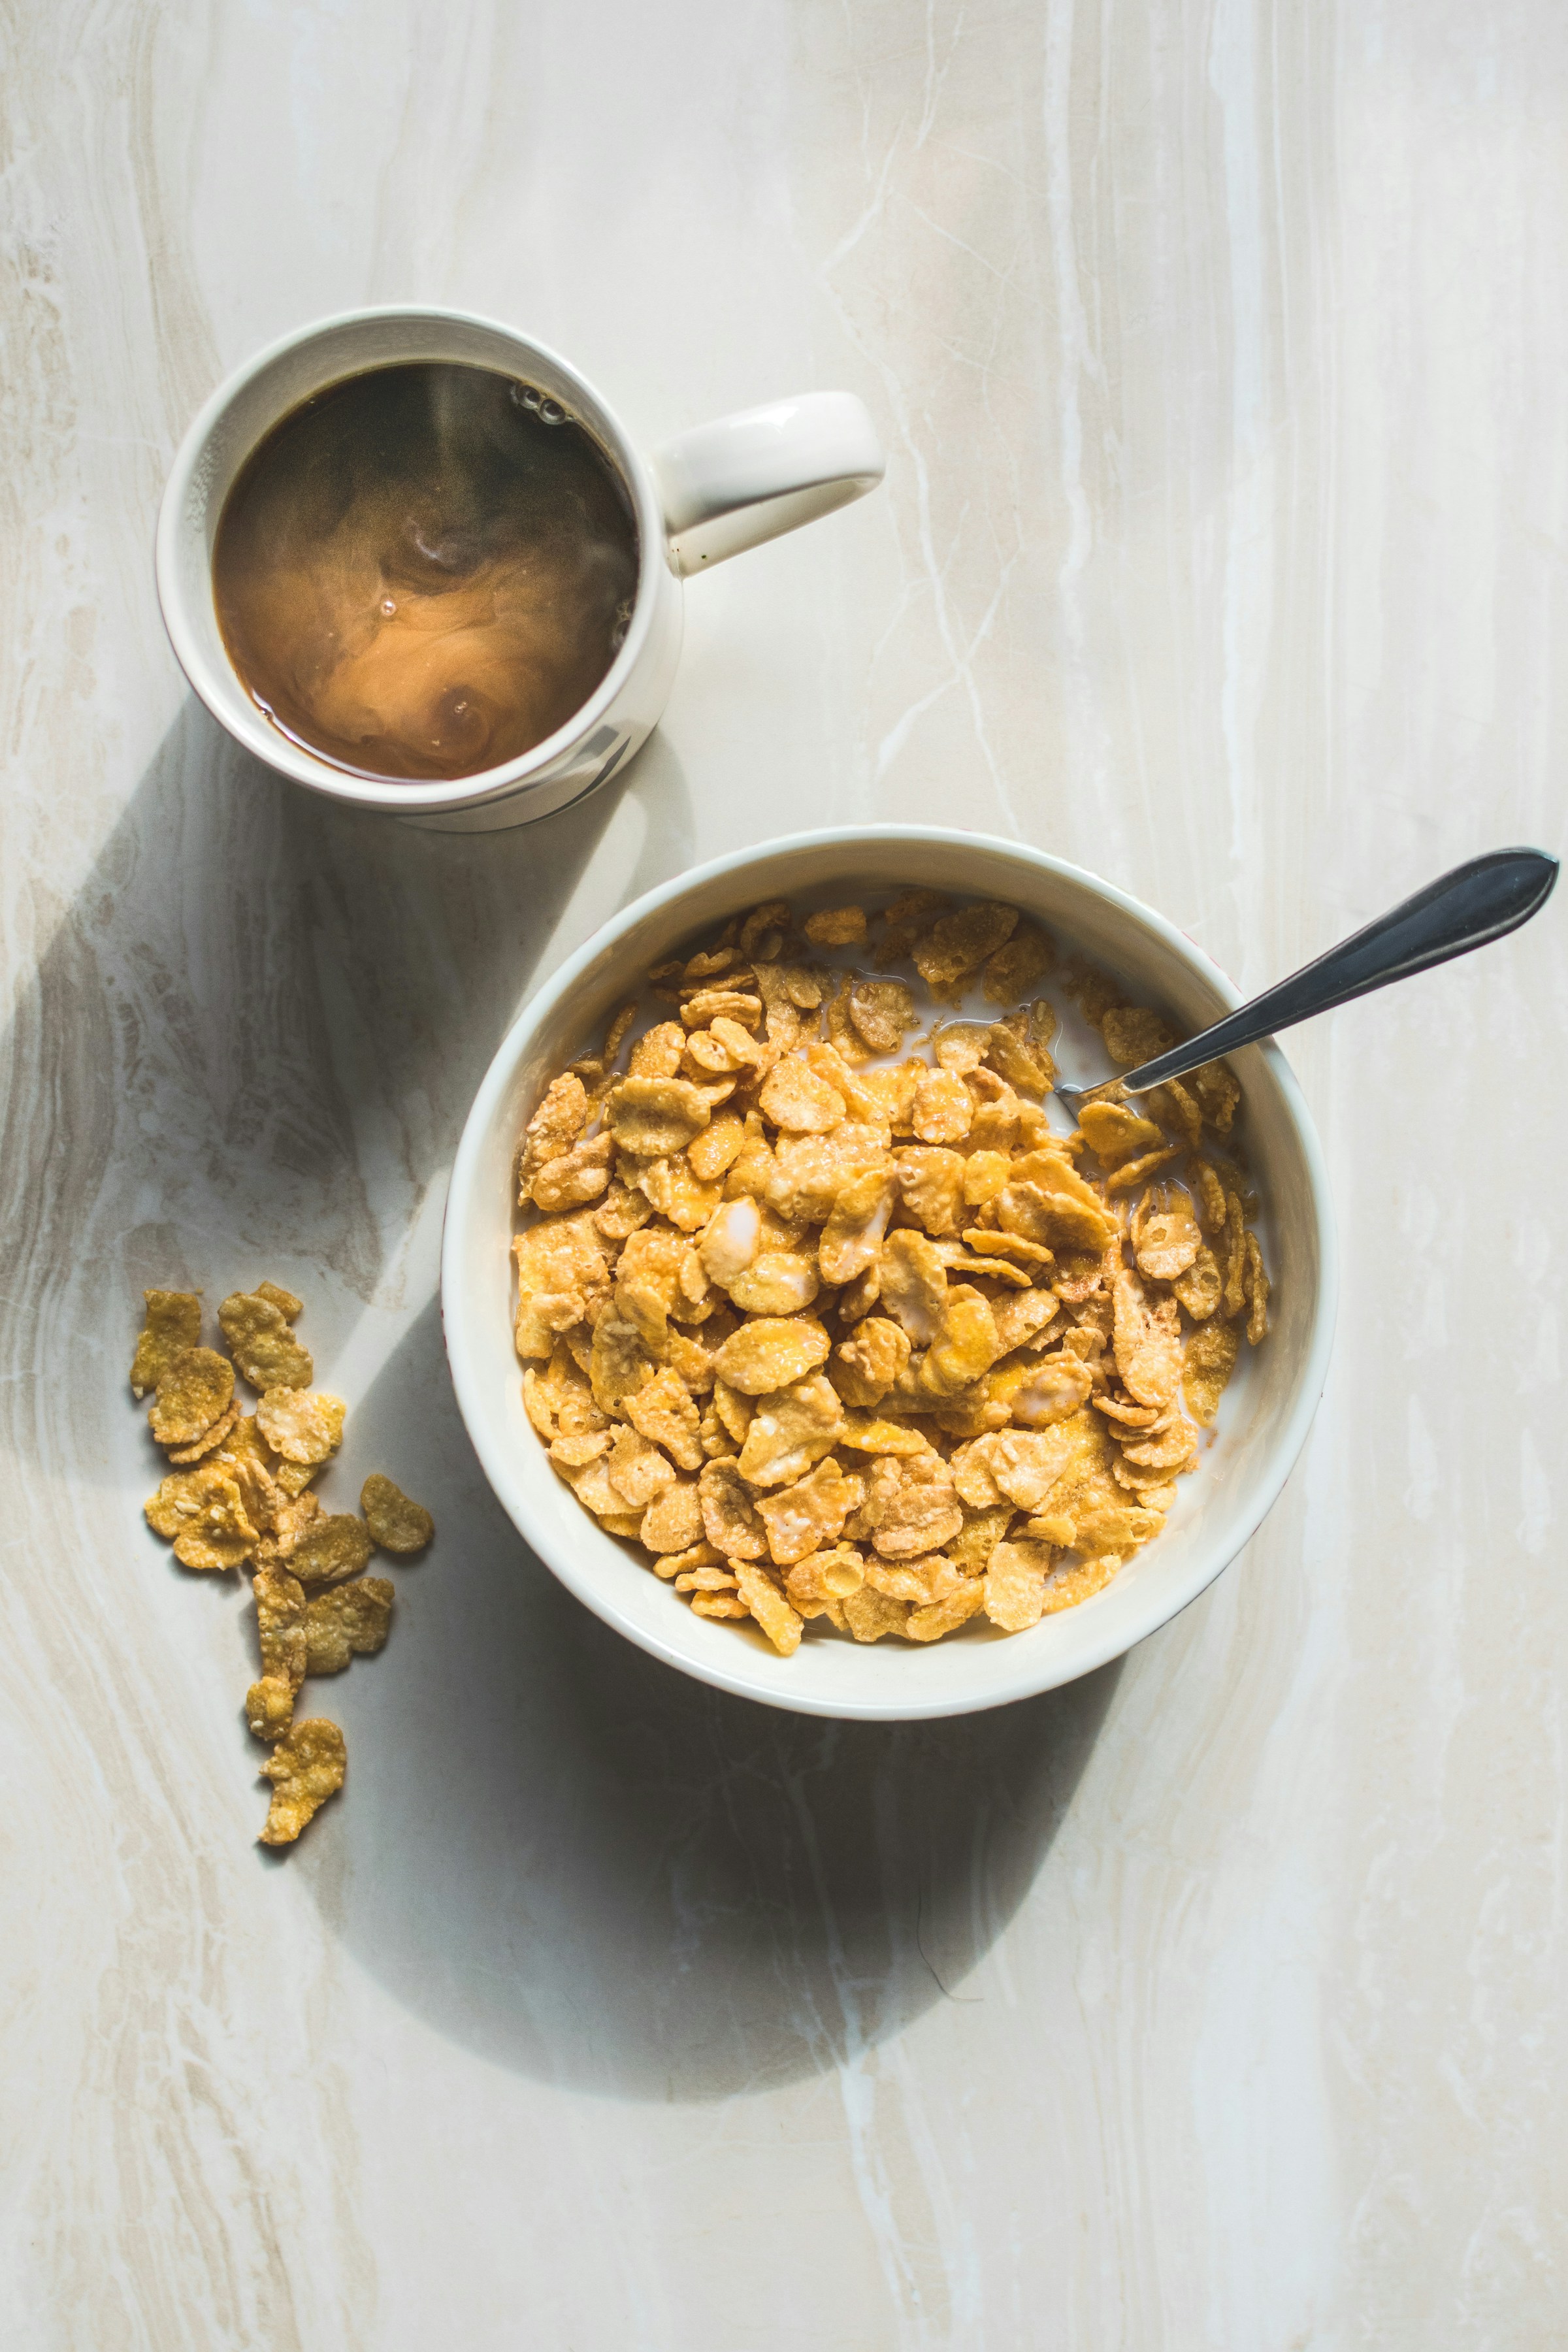 Un bol de cereales y una taza de café | Foto: Unsplash